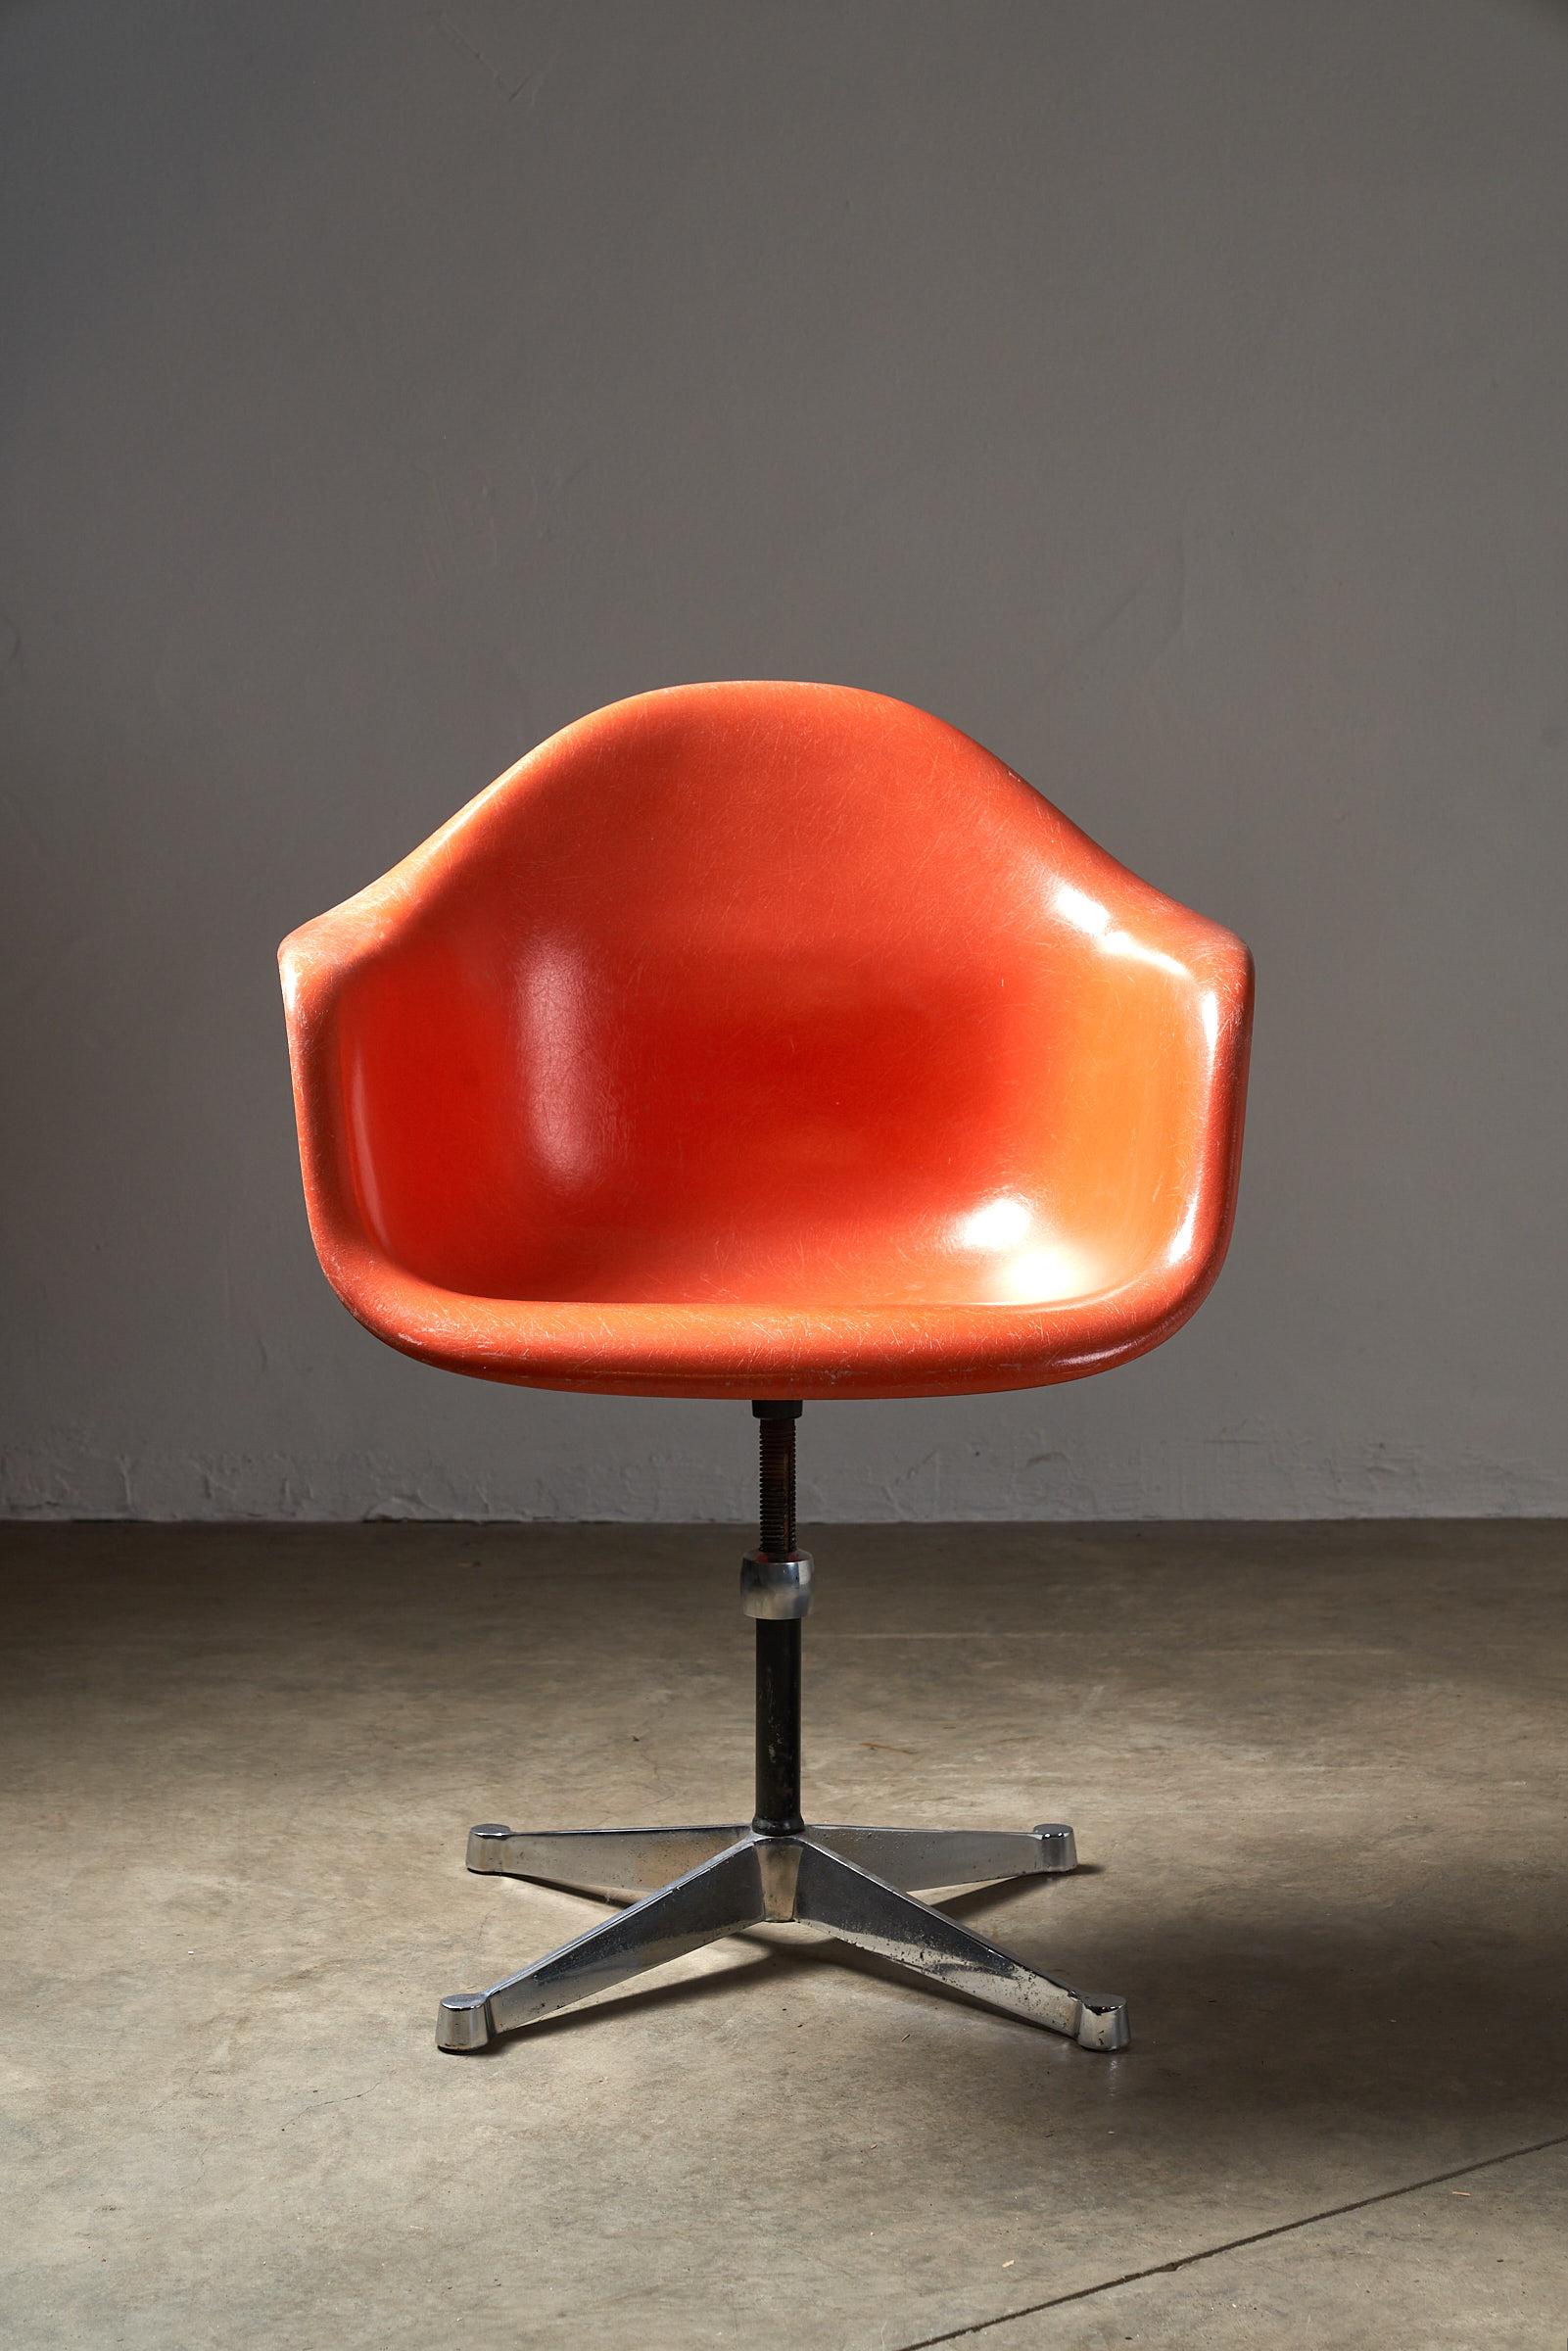 Voici la chaise Charles Eames by Herman Miller Orange Fibreglass Shell Chair, une pièce intemporelle de l'histoire du design. Chaque chaise possède son propre caractère unique, mettant en valeur son âge et son héritage tout en conservant son attrait